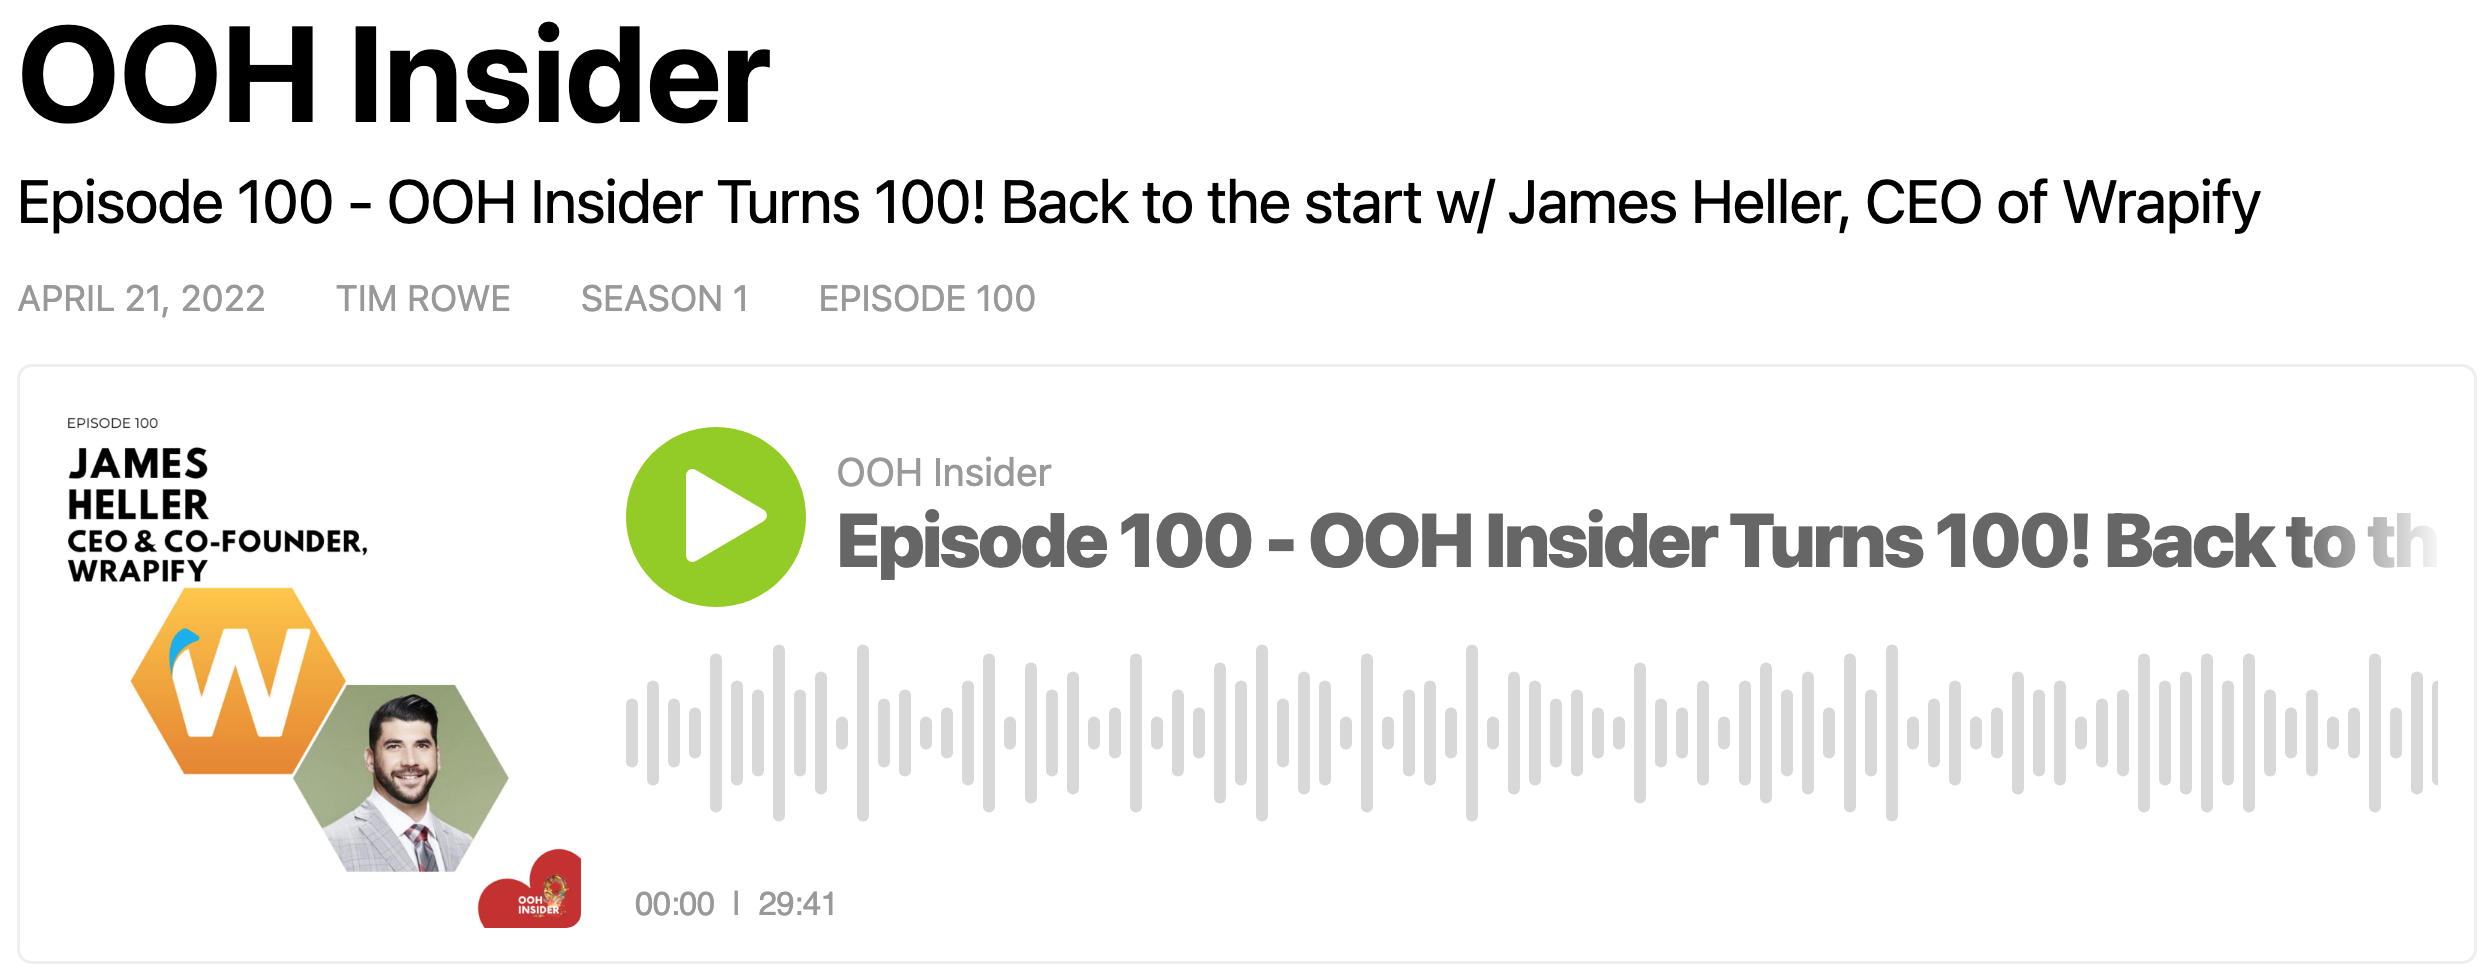 OOH Insider Podcast Episode 100